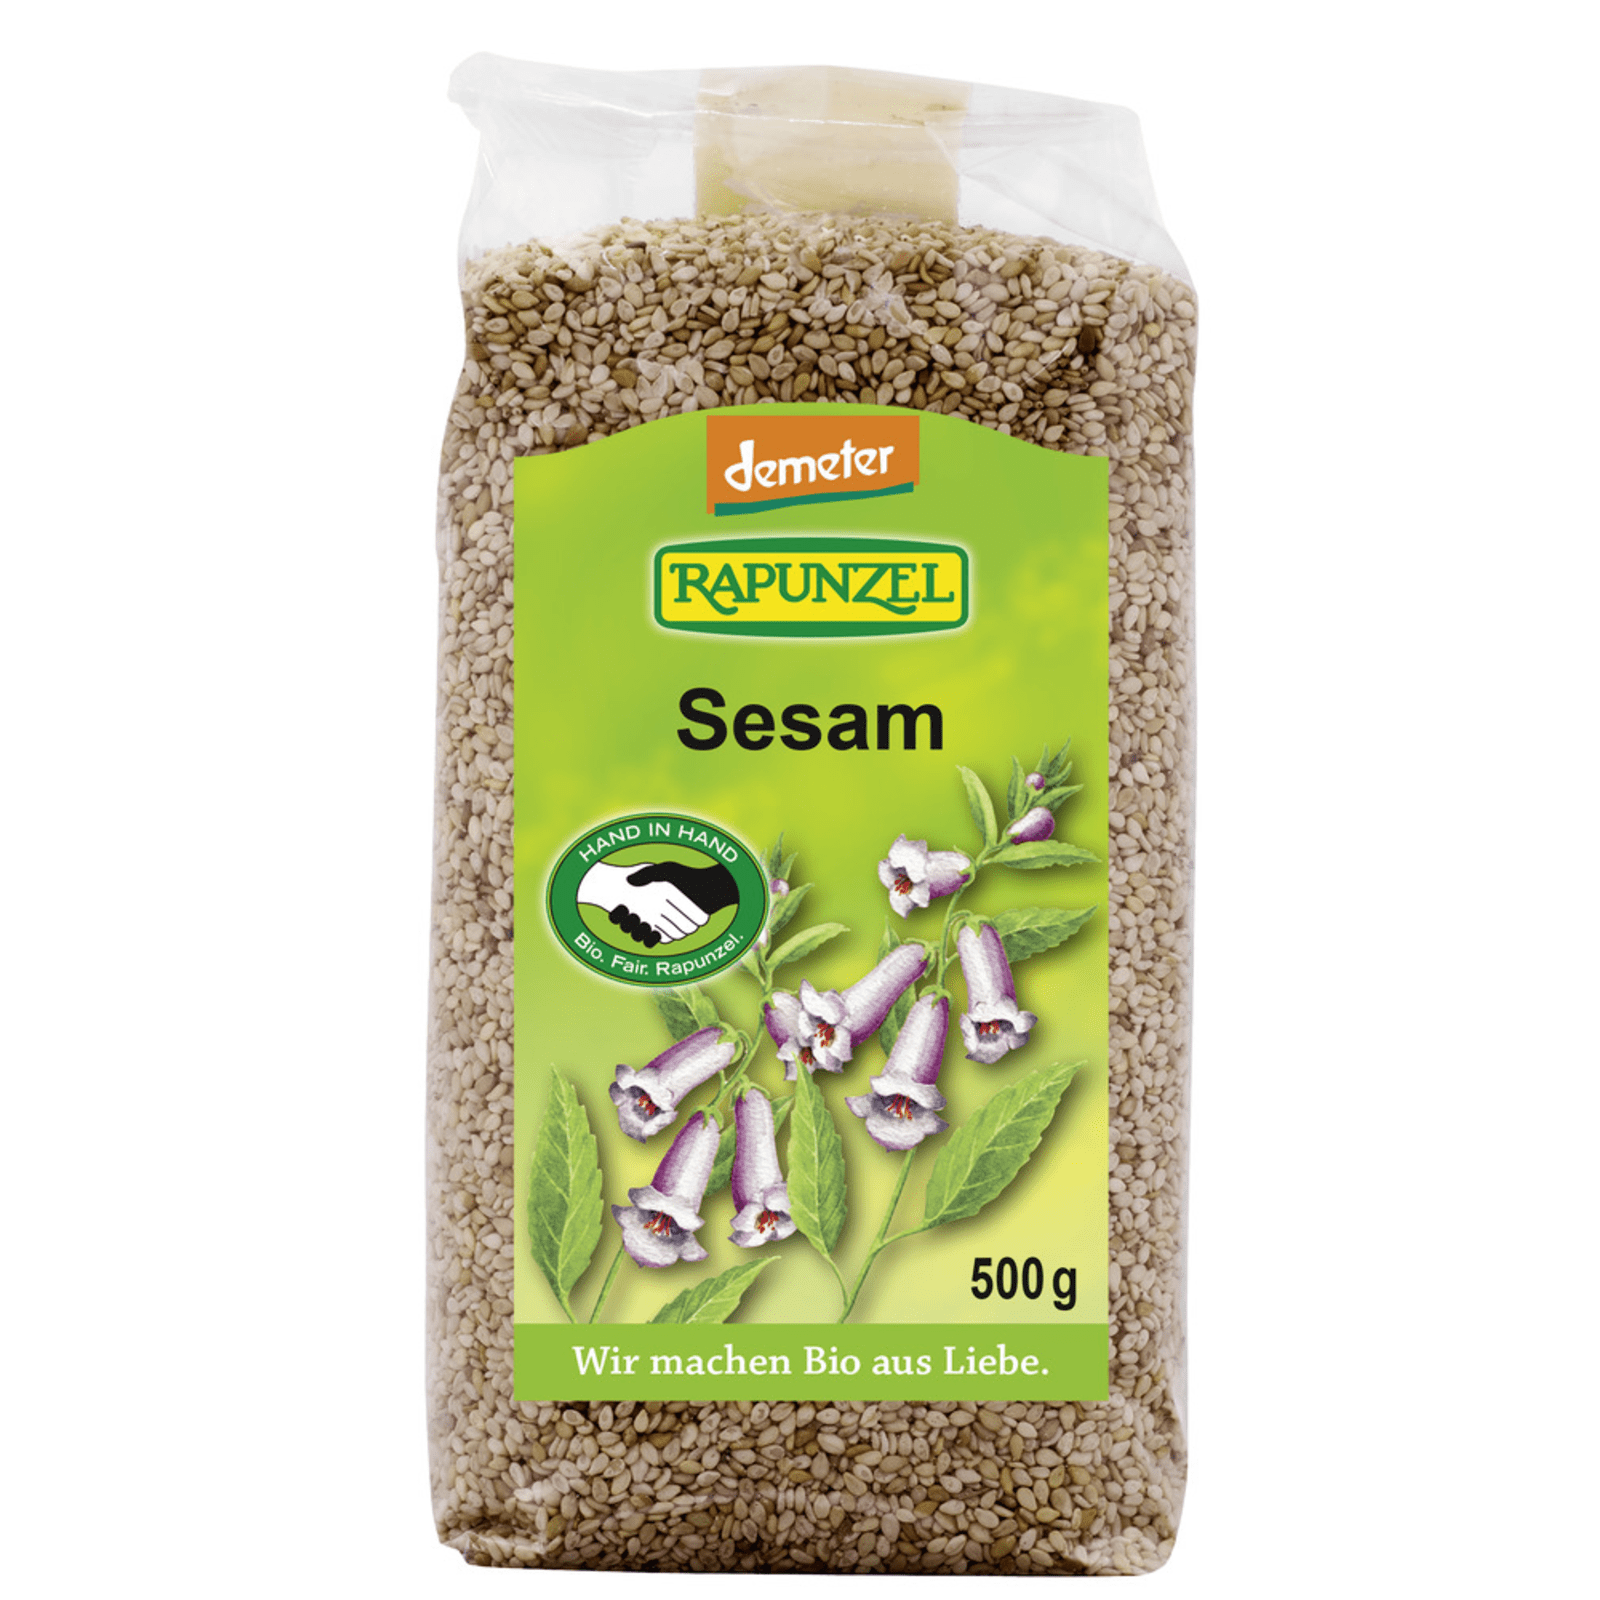 Demeter Sesam ungeschält bio (500g) von Rapunzel